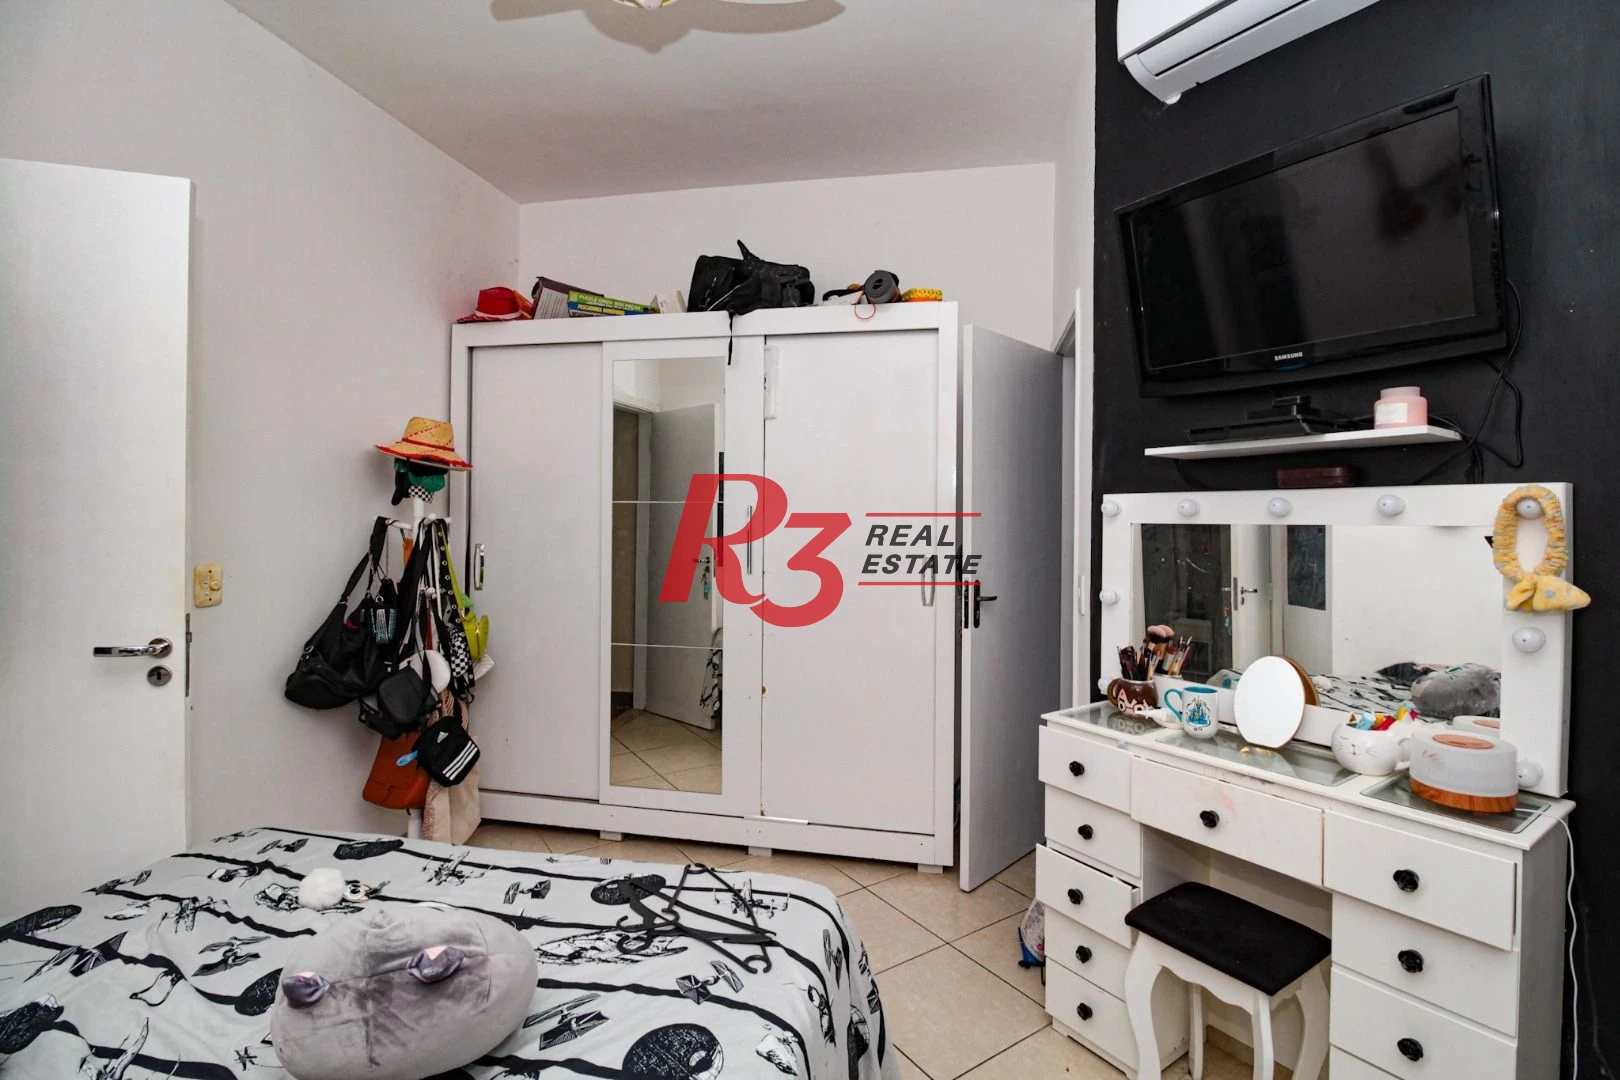 Sobrado com 3 dormitórios à venda, 89 m² por R$ 900.000,00 - Campo Grande - Santos/SP